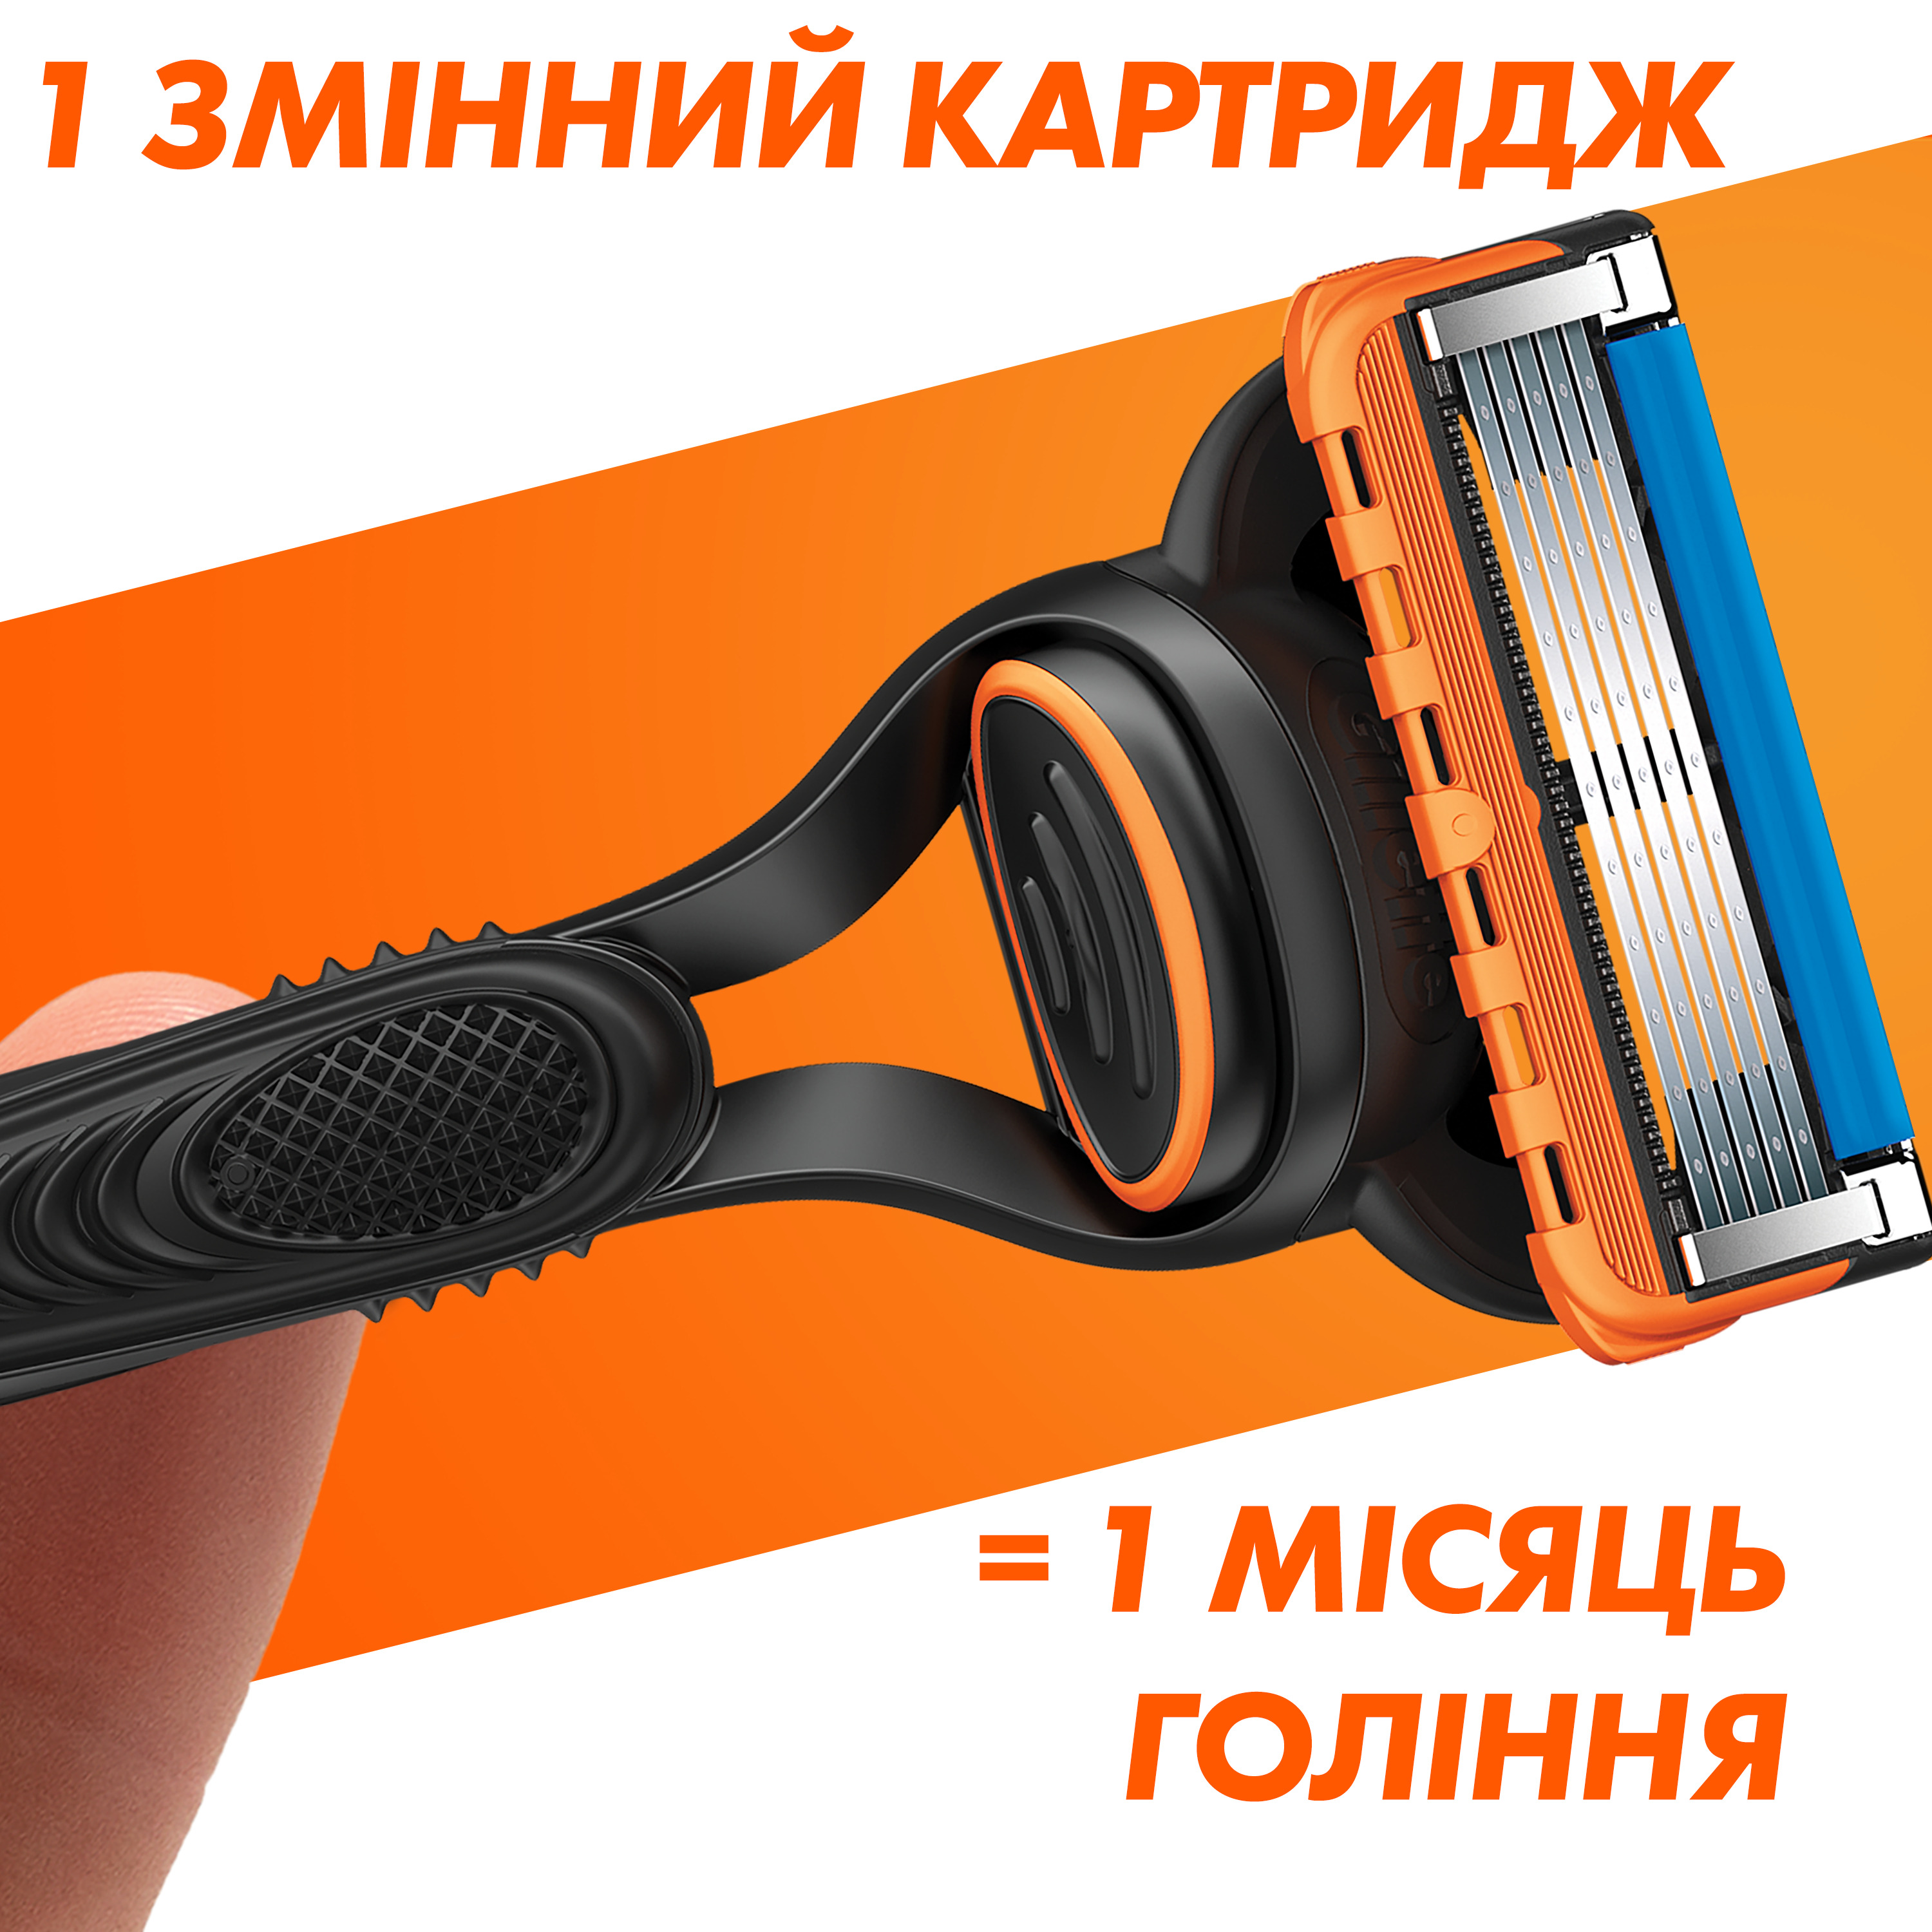 Сменные картриджи для бритья Gillette Fusion5, 4 шт - фото 5